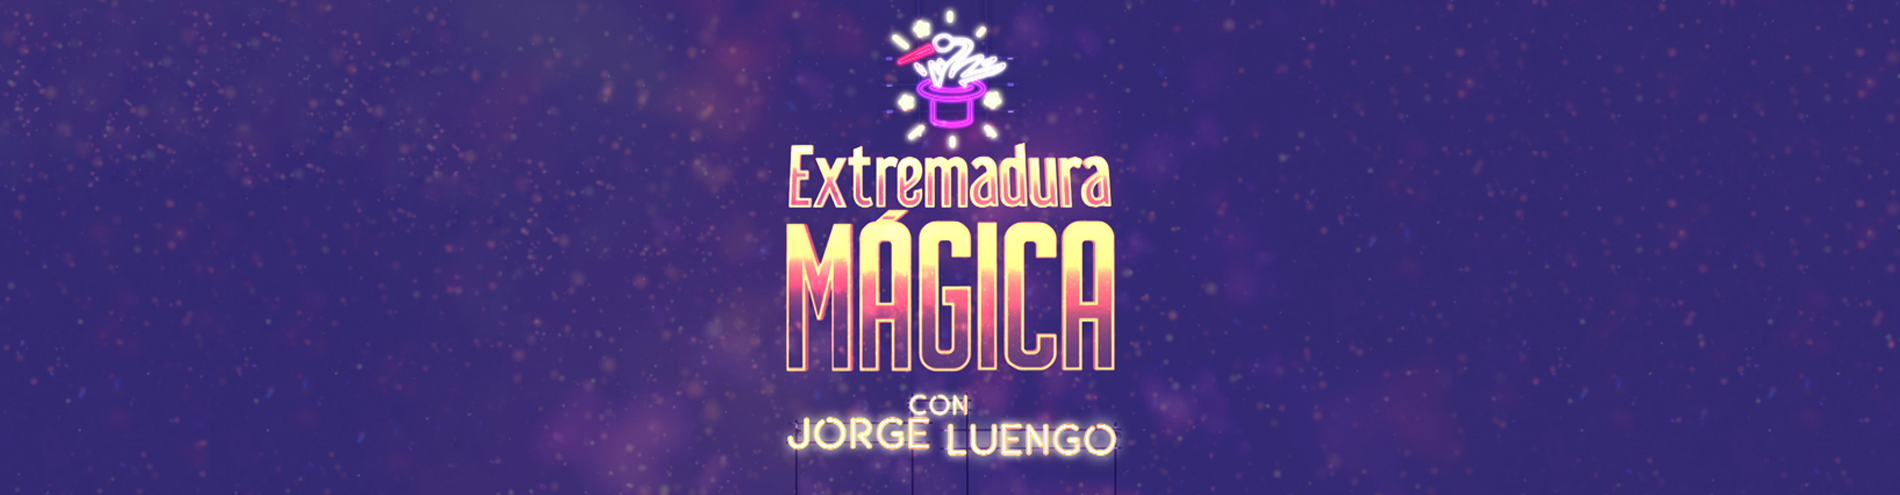 Extremadura mágica Gestorex Canal Extremadura